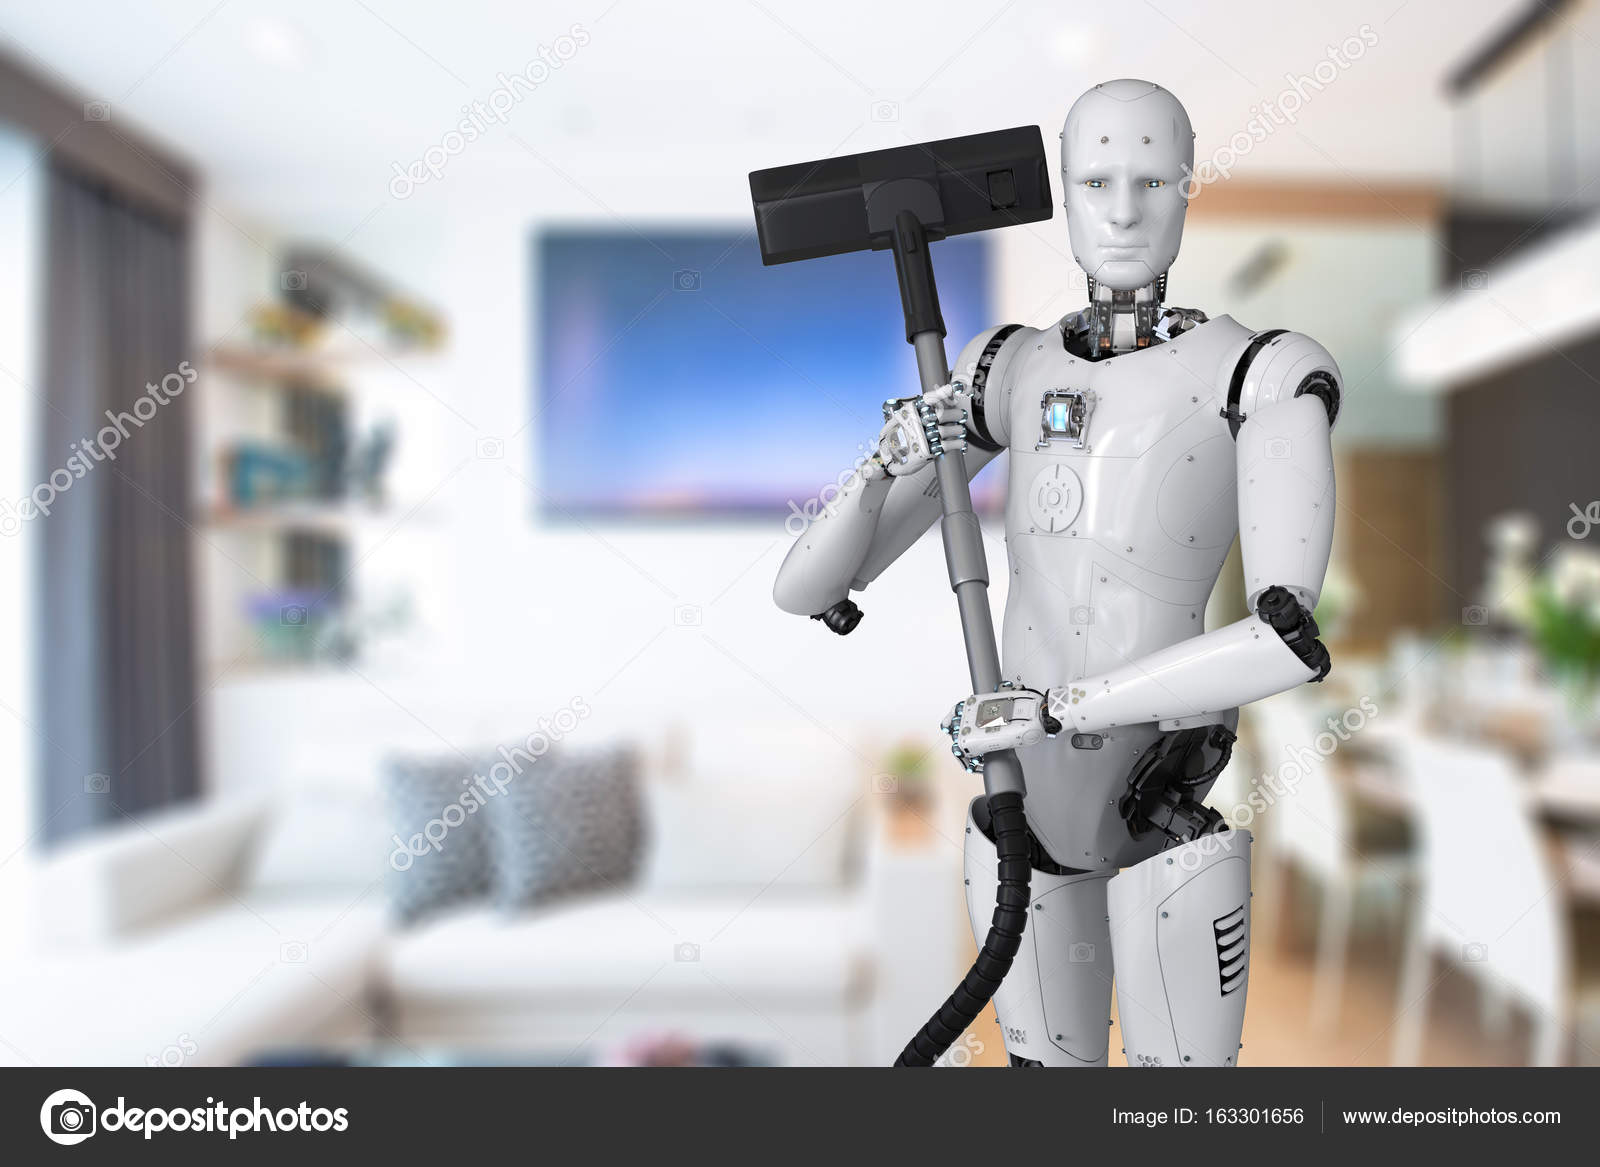 Future cleaning. Роботы исследователи. Бытовые роботы. Робот уборщик будущего. Робот помощник по дому.